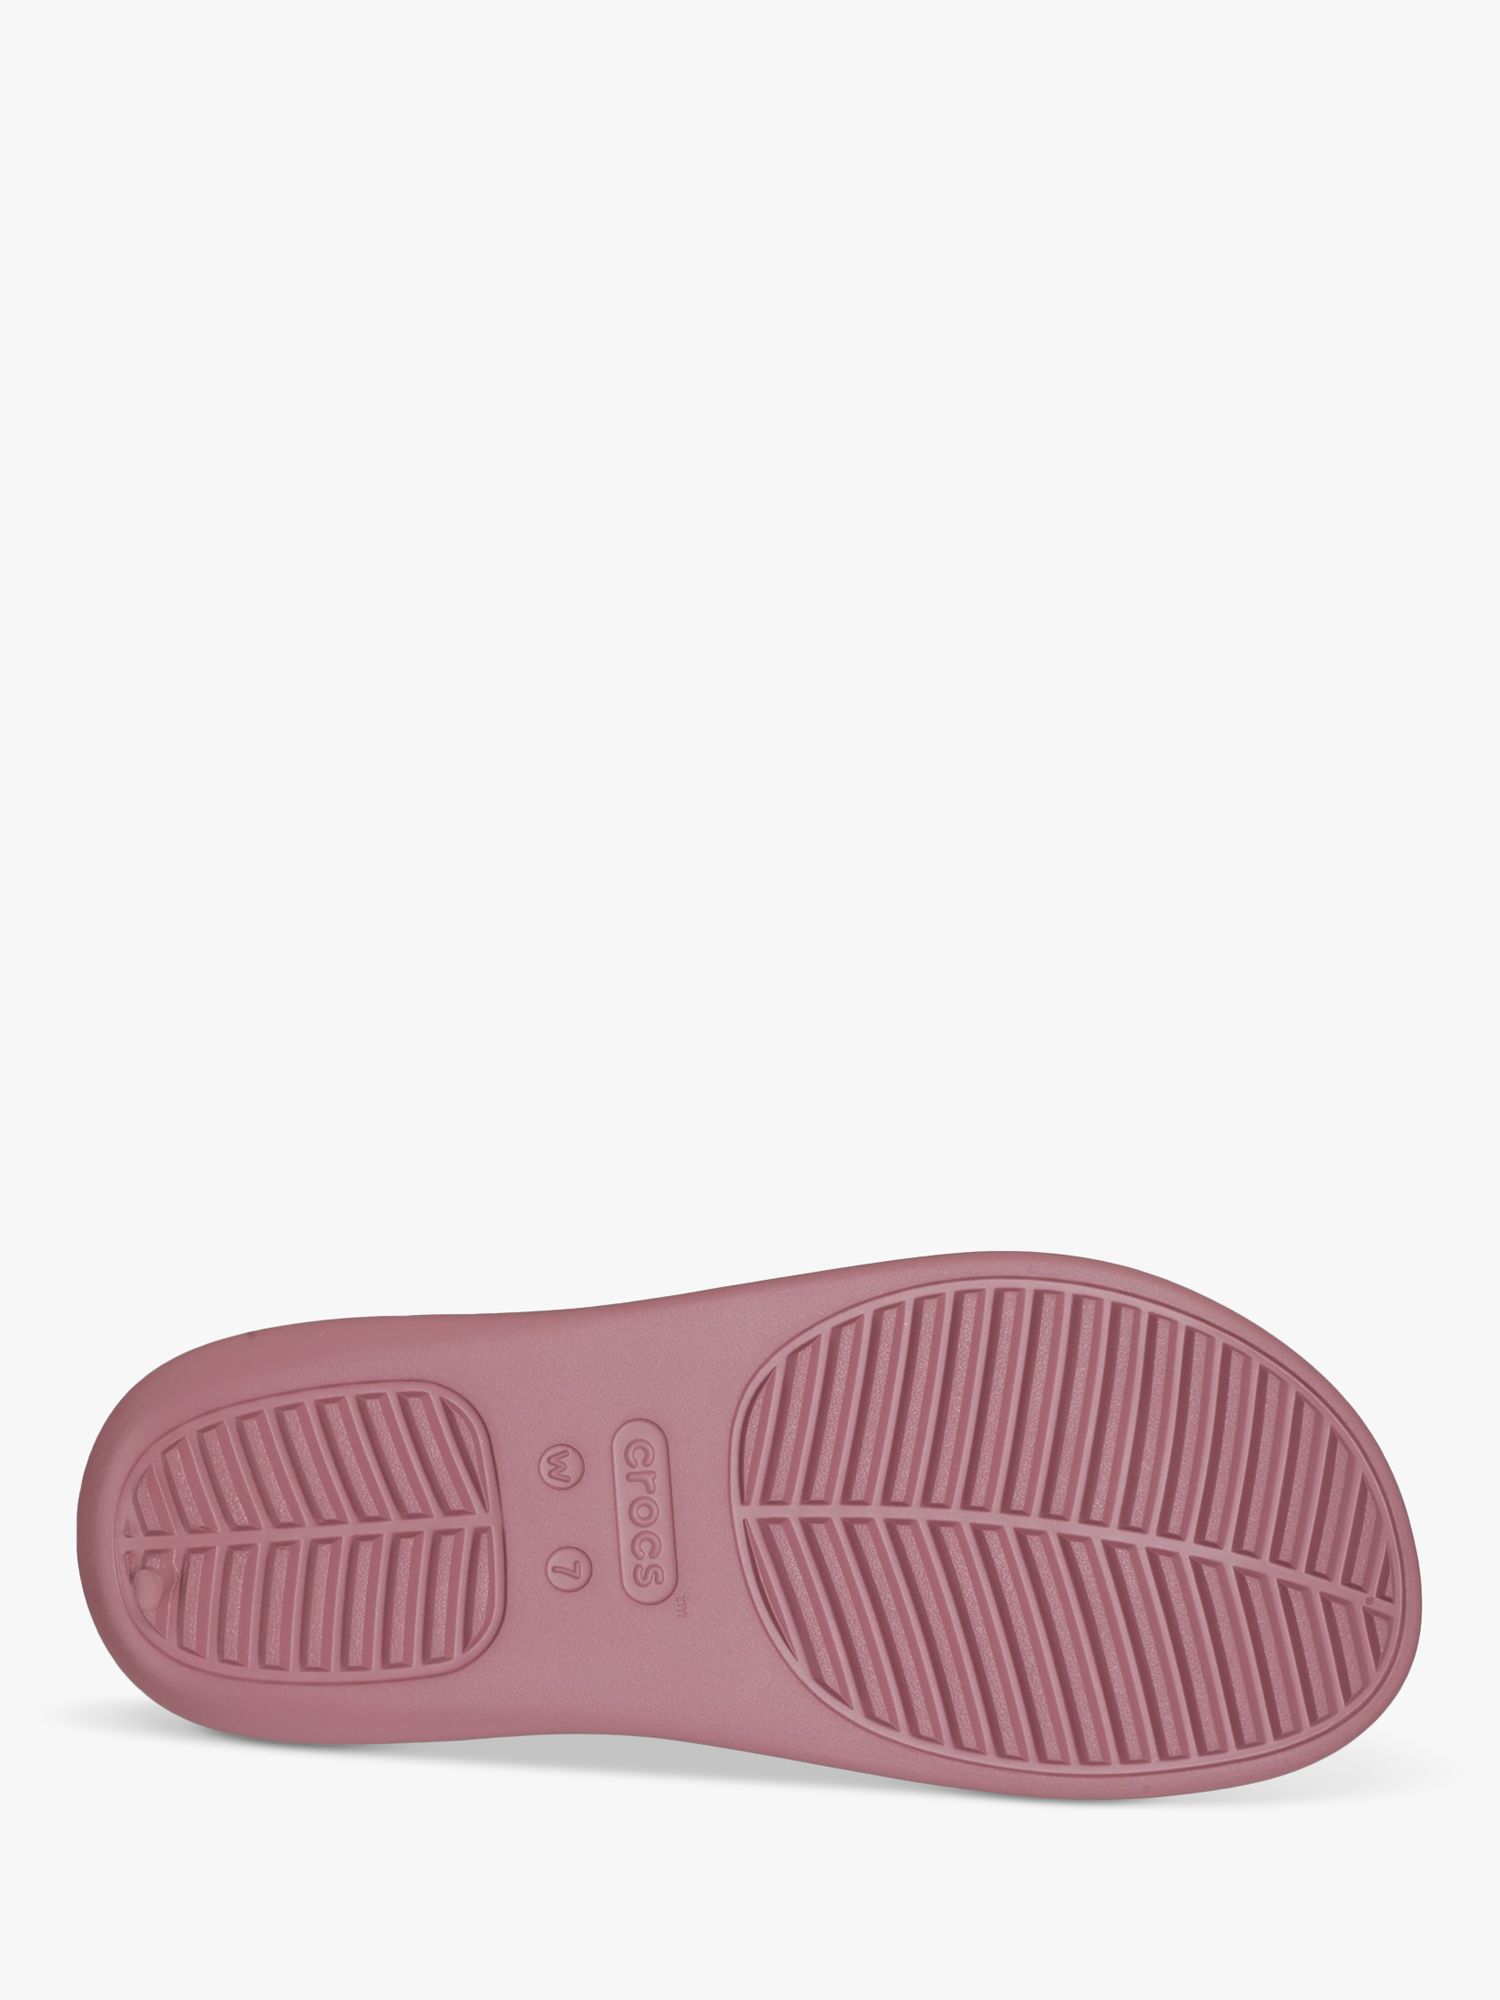 Crocs Getaway Flip-Flops, Dark Pink, 4